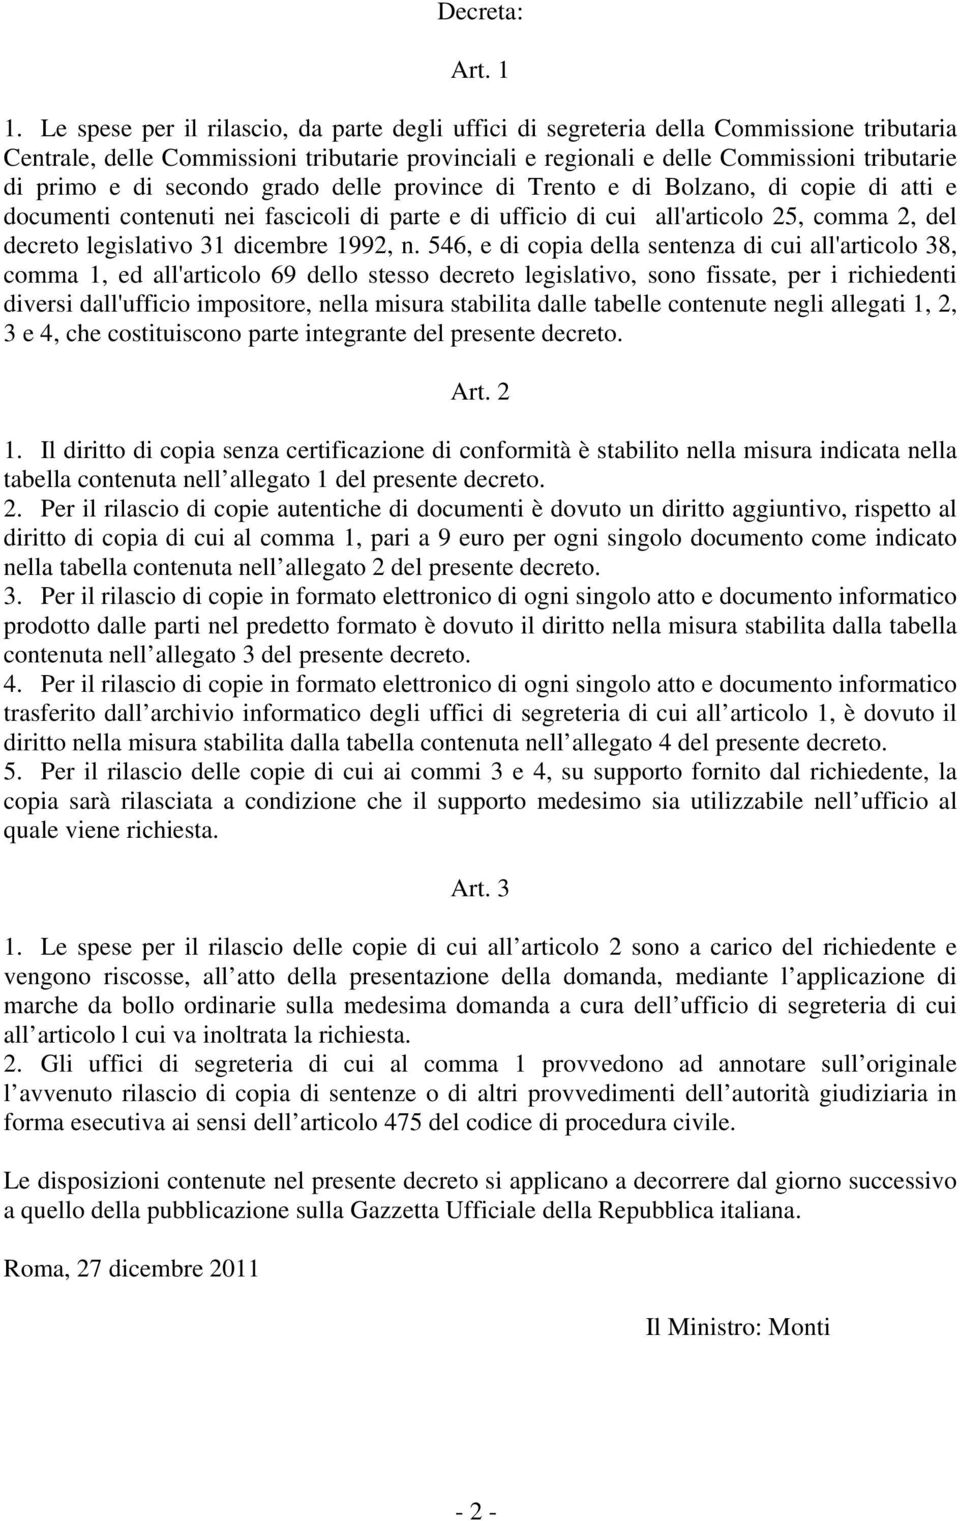 secondo grado delle province di Trento e di Bolzano, di copie di atti e documenti contenuti nei fascicoli di parte e di ufficio di cui all'articolo 25, comma 2, del decreto legislativo 31 dicembre